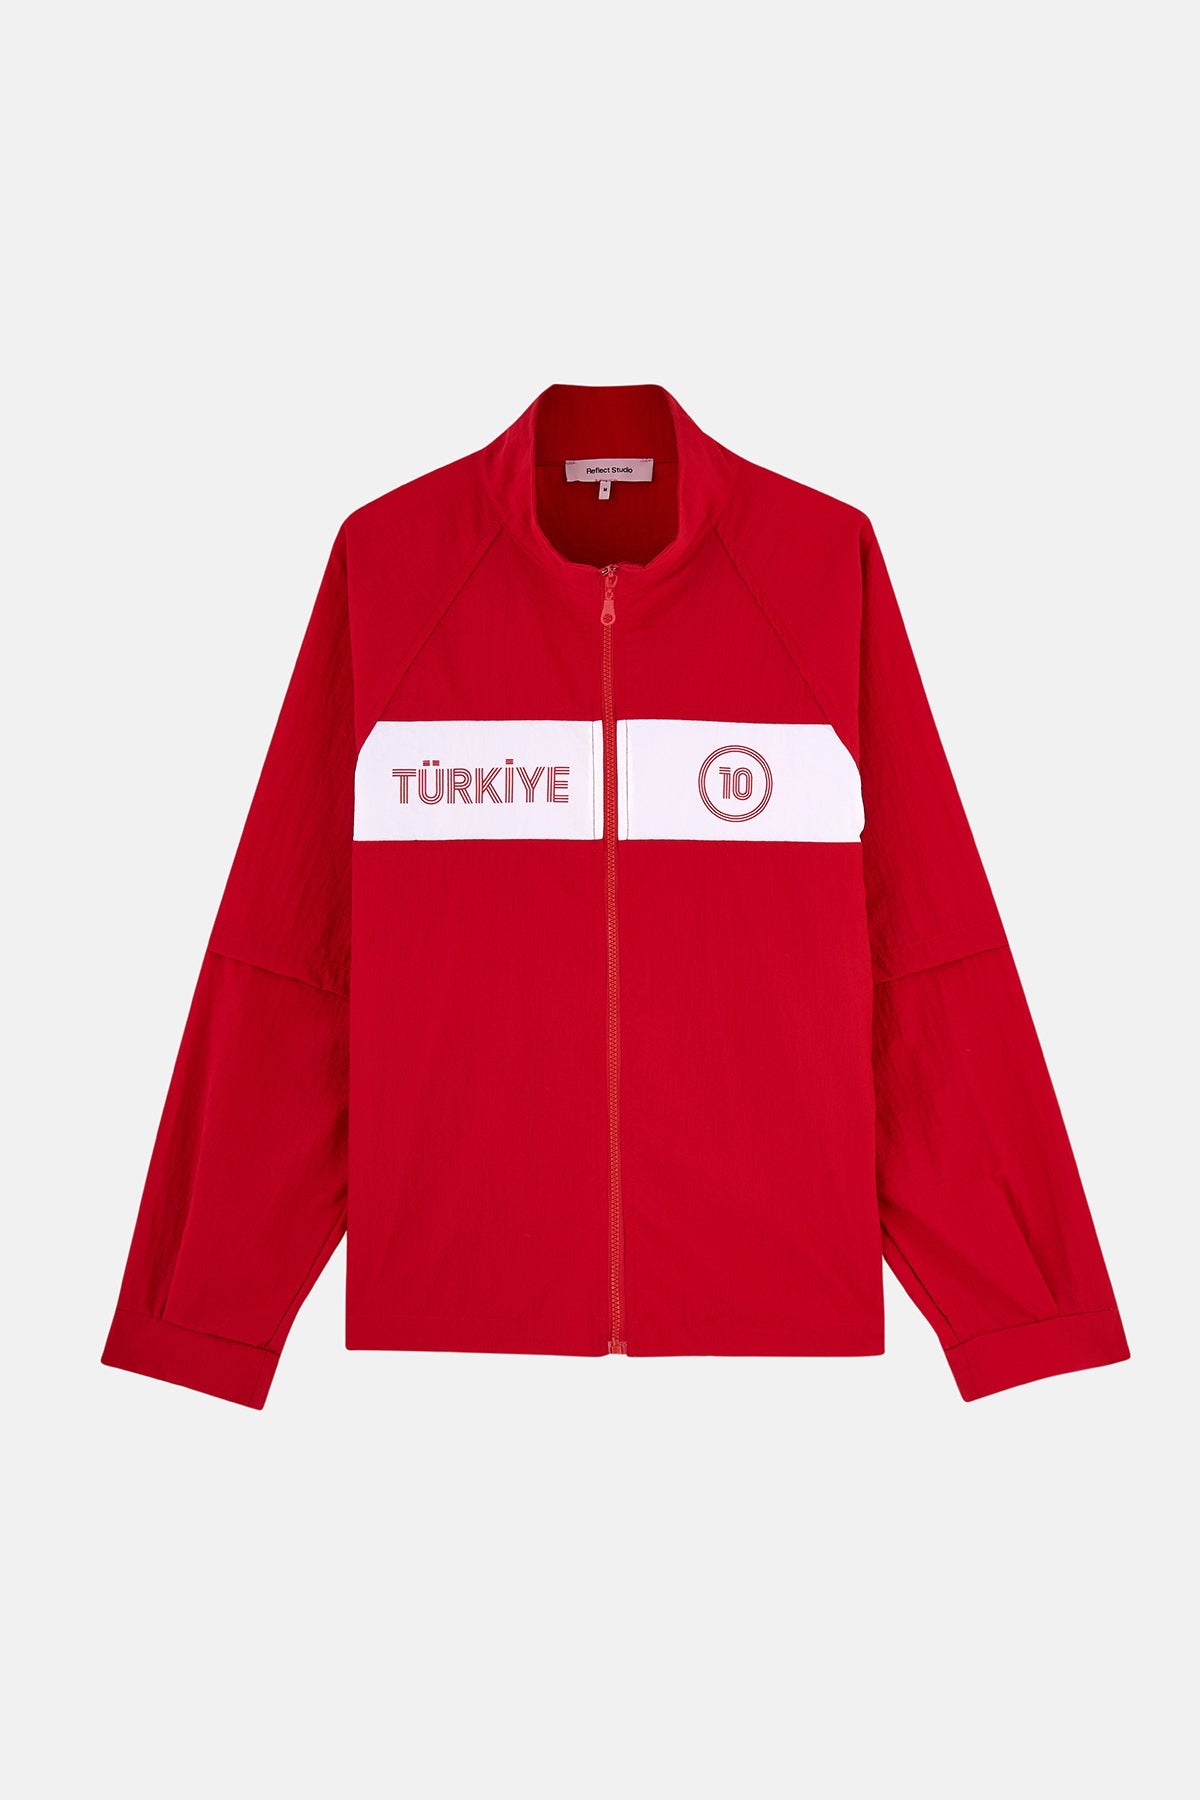 Türkiye 10 Rüzgarlık - Kırmızı/Beyaz